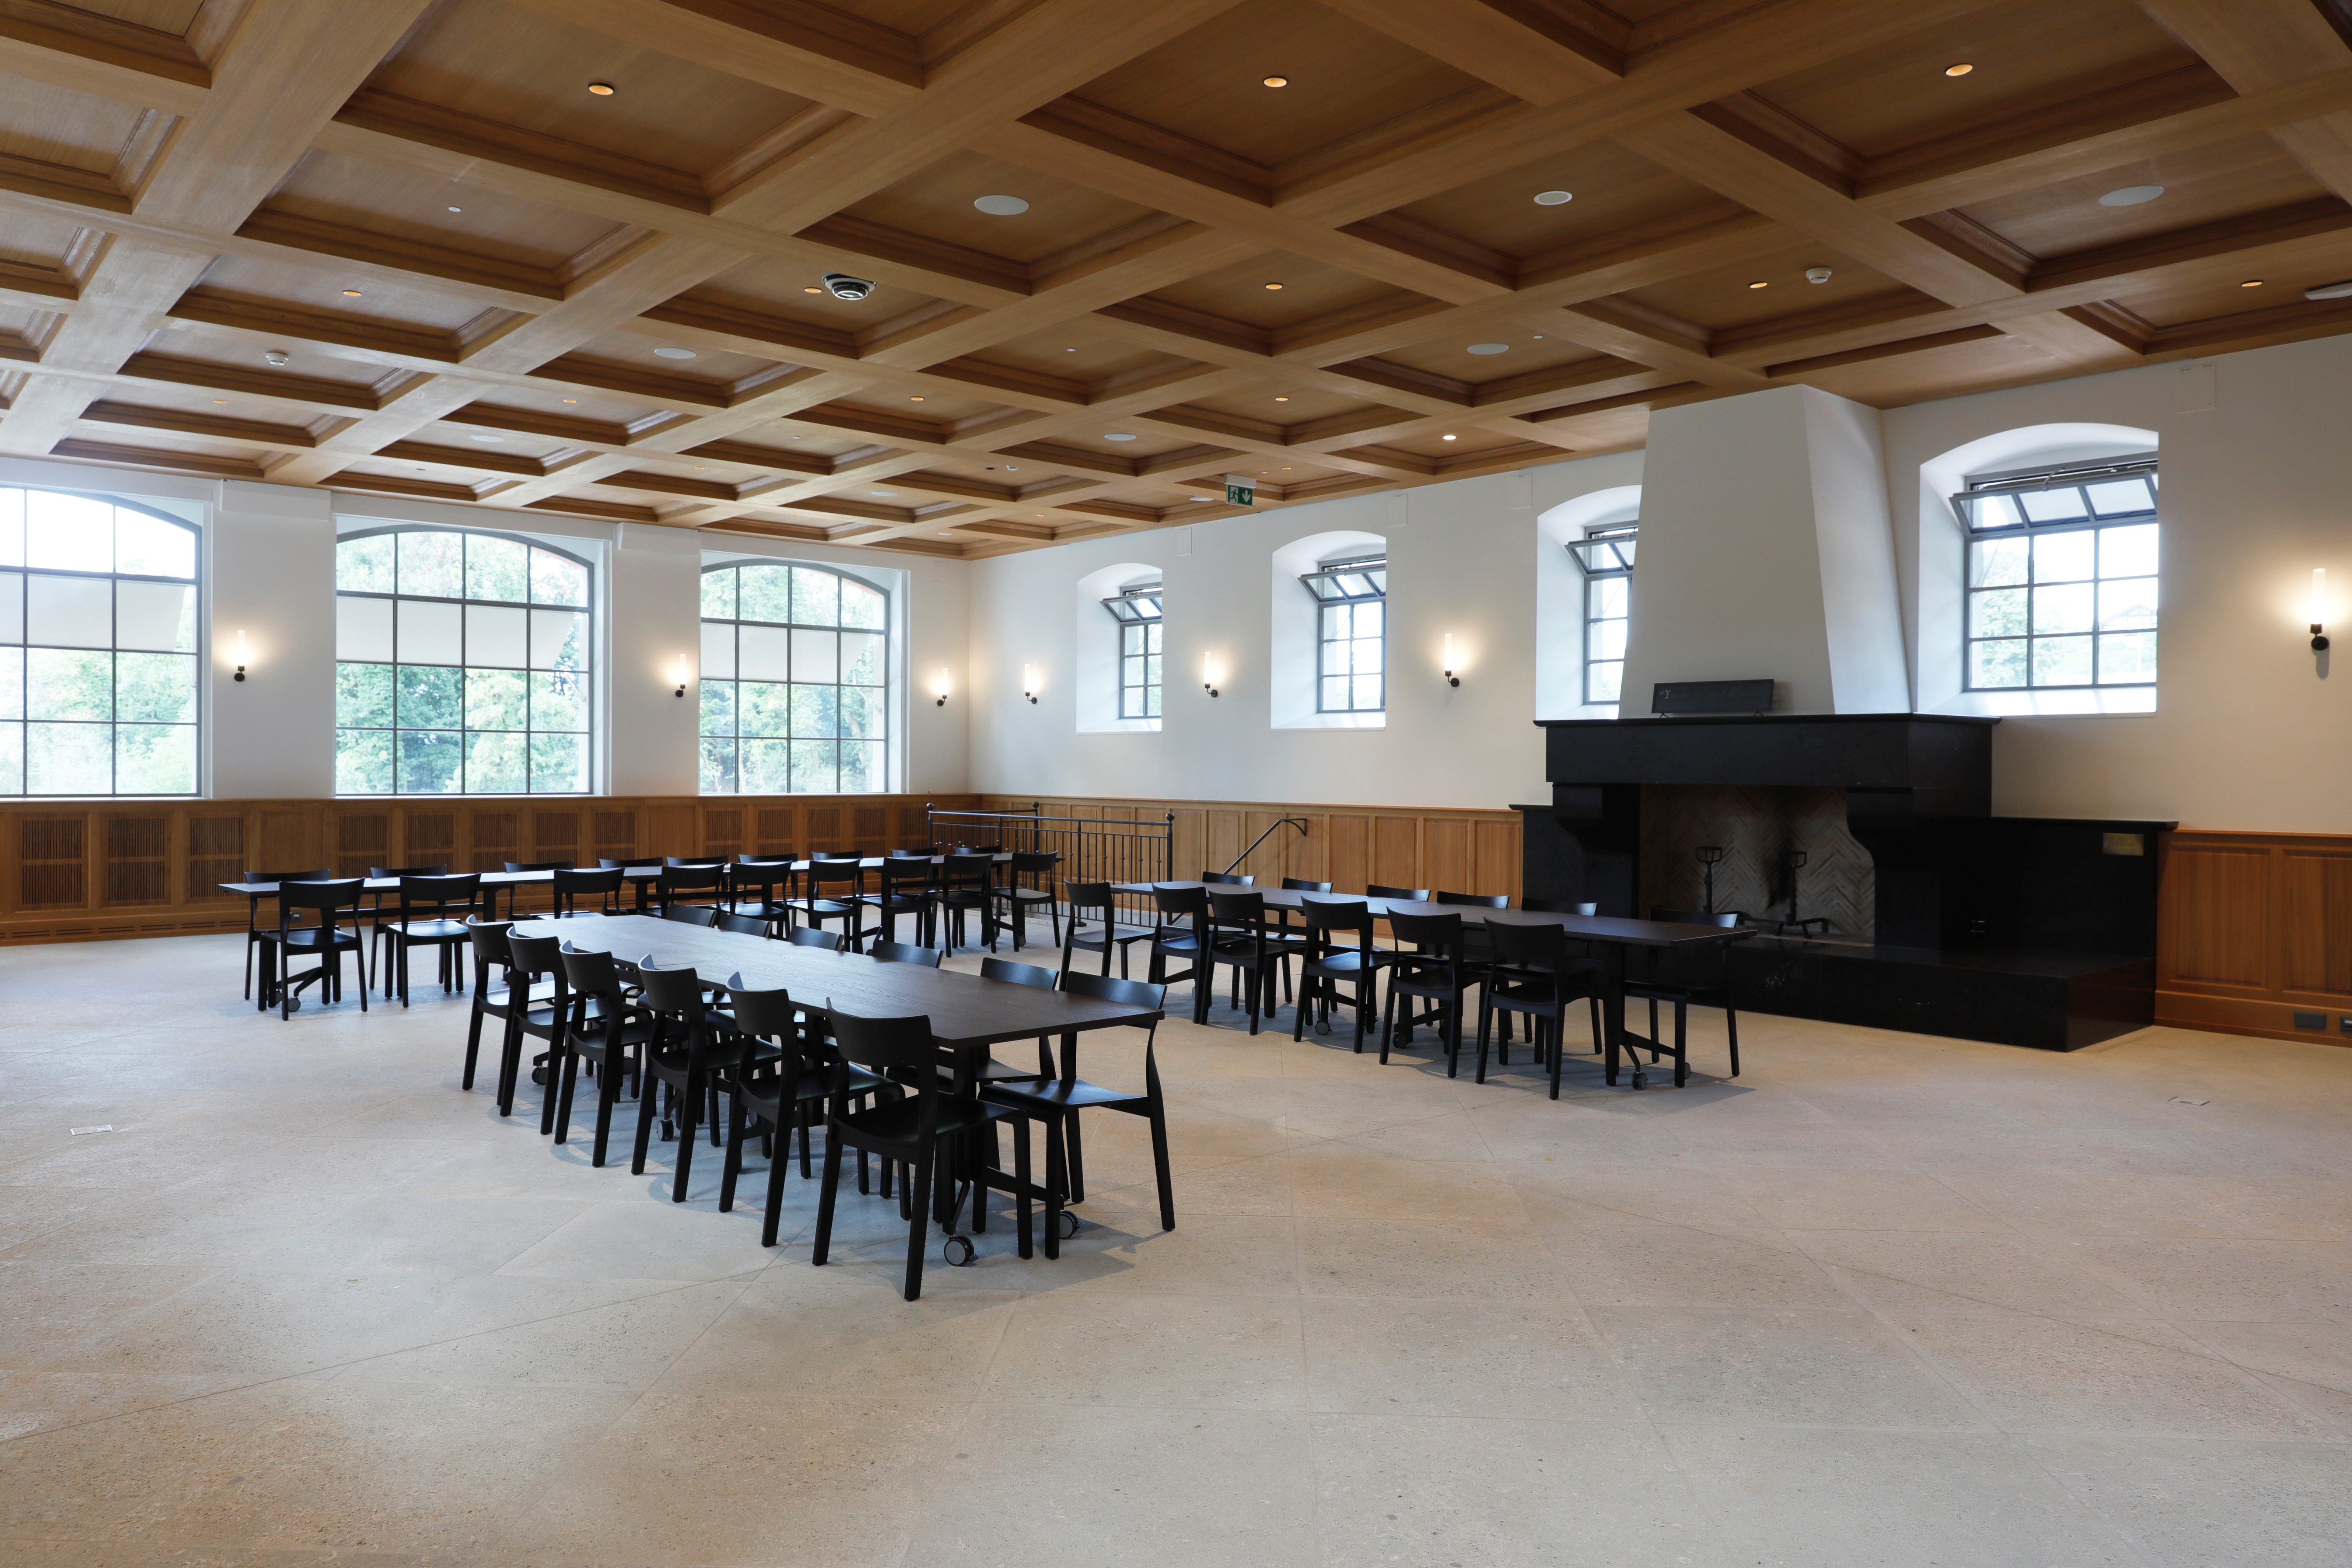 Le rez-de-chaussée de l’Orangerie, entièrement refaite, a été aménagé en salle à manger pouvant accueillir jusqu’à 150 personnes.